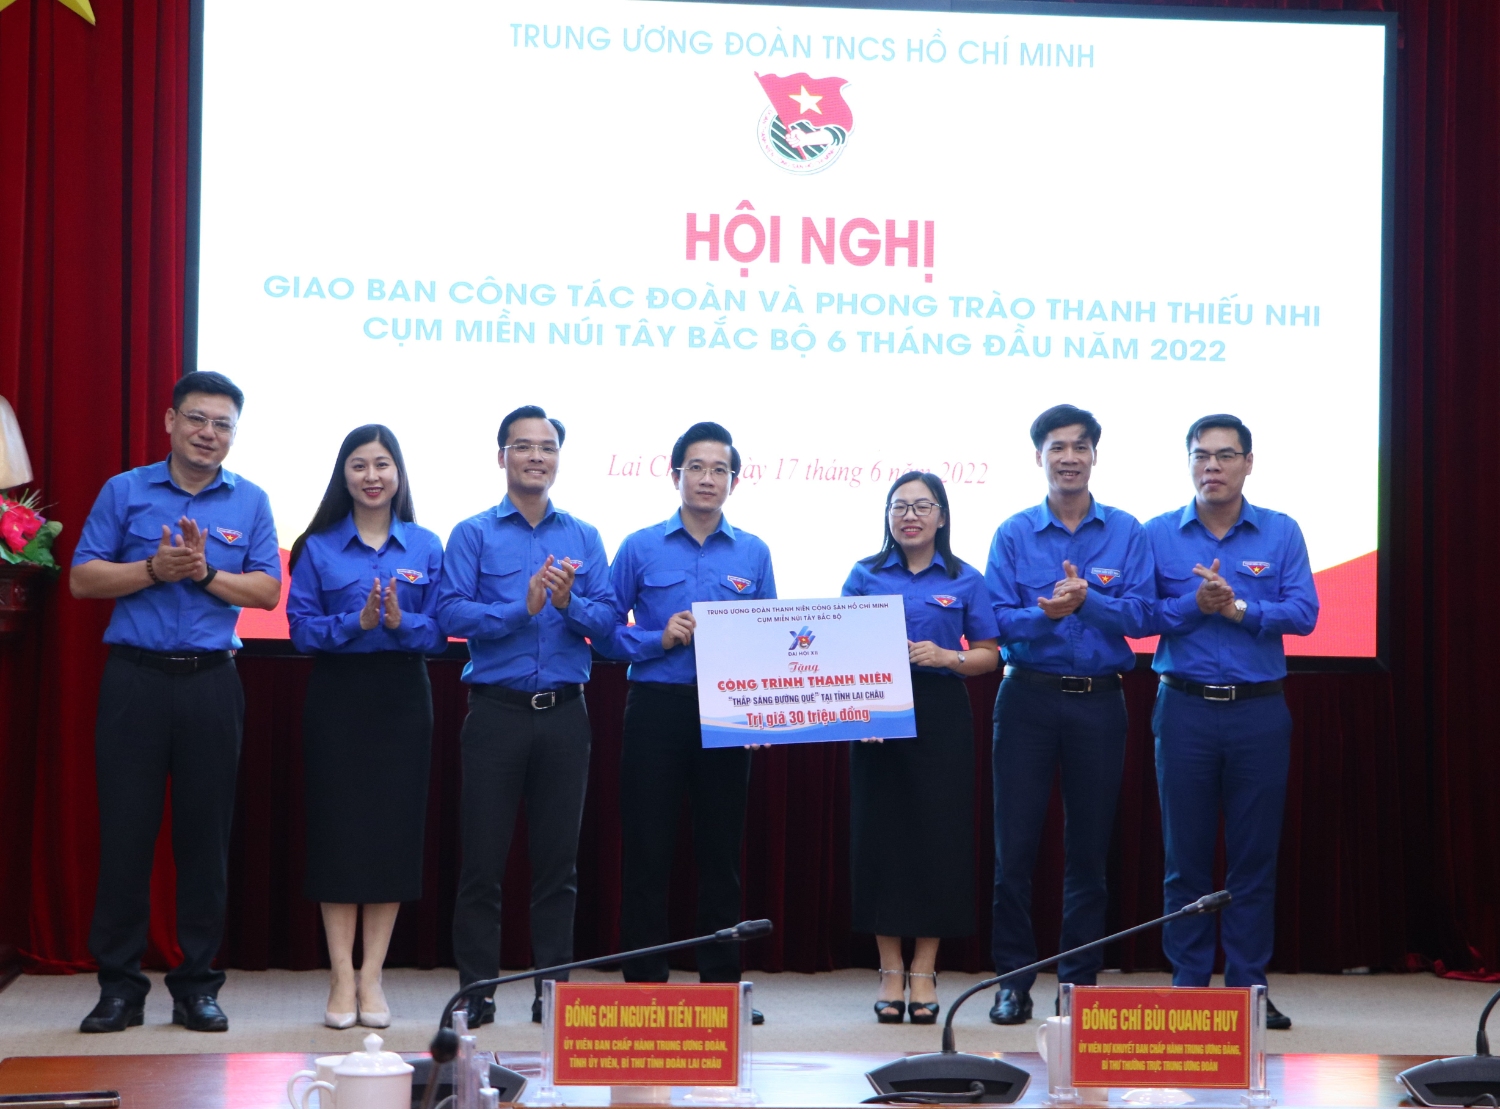 Lãnh đạo Trung ương Đoàn và Tỉnh đoàn các tỉnh trong Cụm trao biển tượng trưng công trình thanh niên "Thắp sáng đường quê" cho Tỉnh đoàn Lai Châu